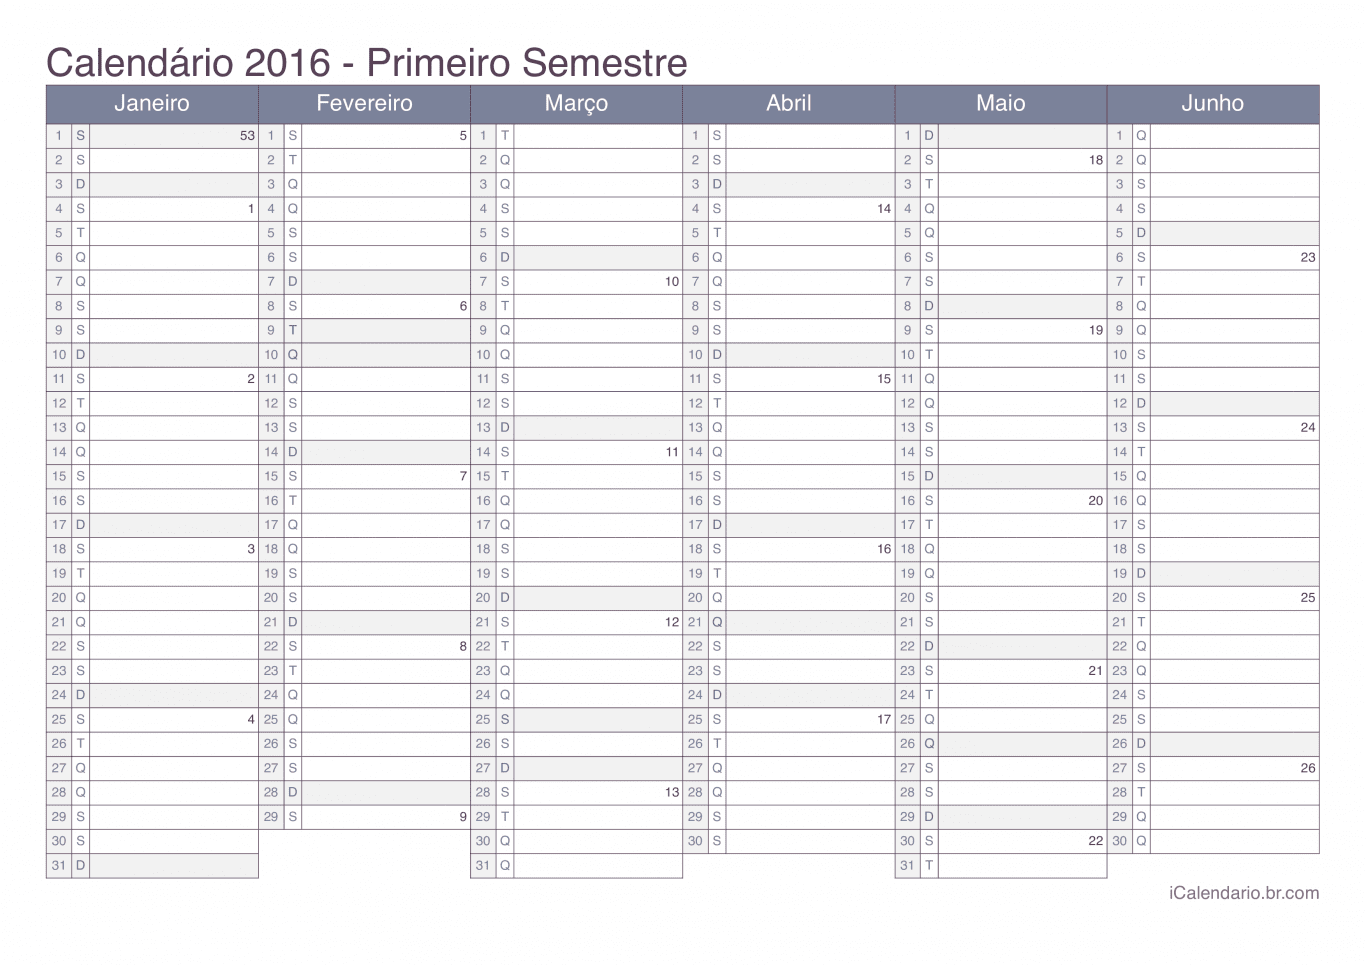 Calendário por semestre com números da semana 2016 - Office